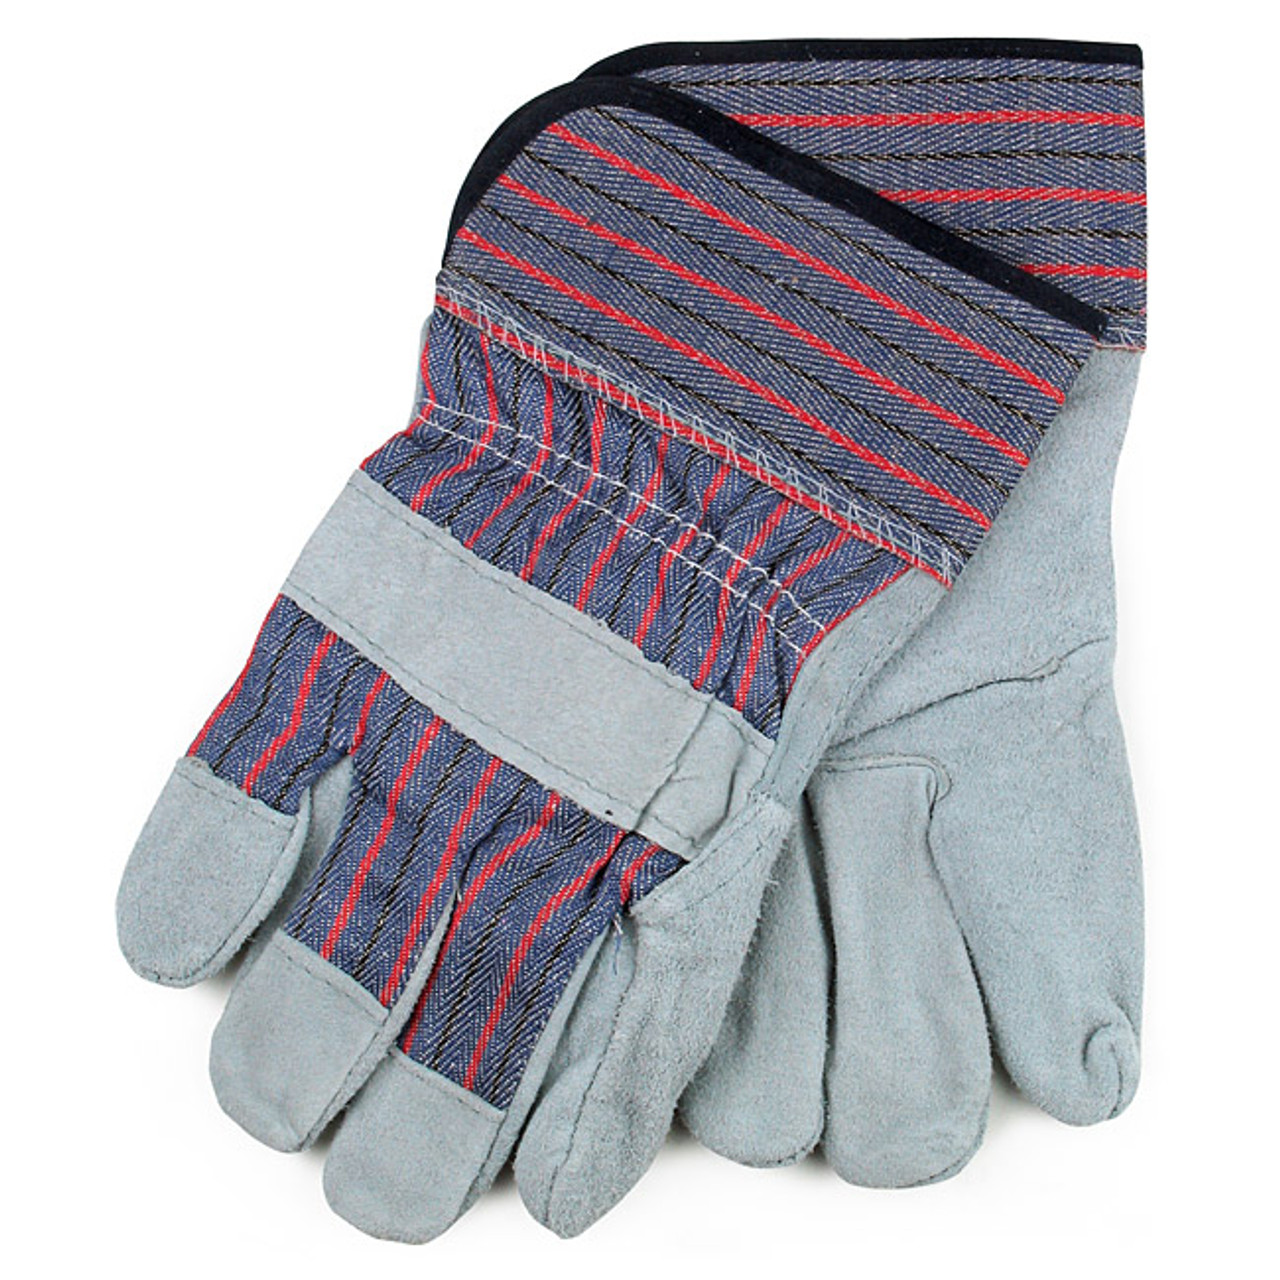 Heavy Duty Mechanics Gloves